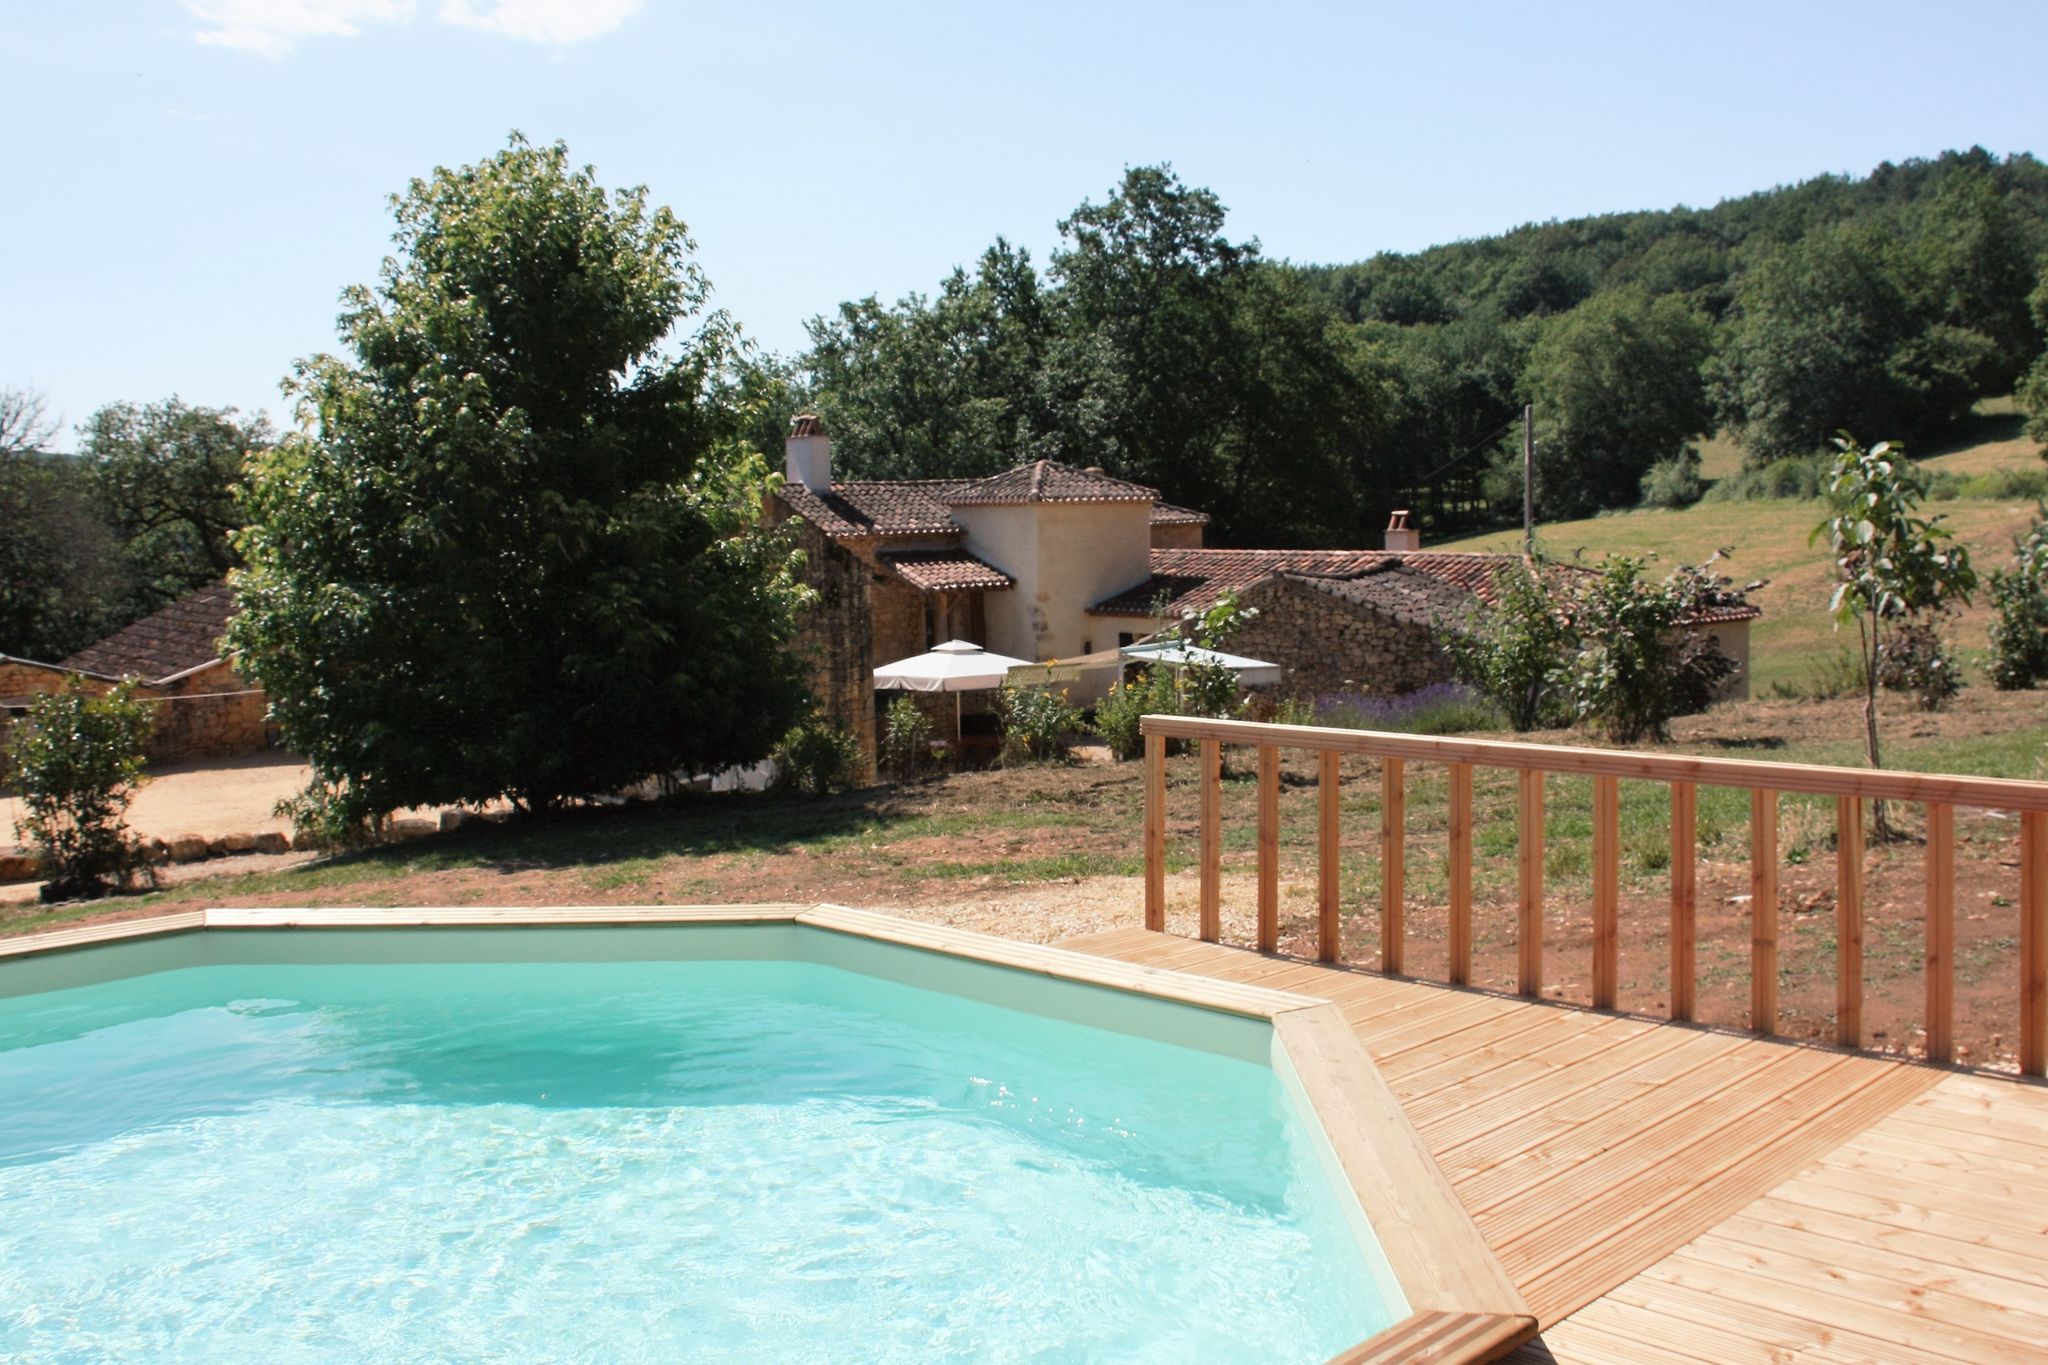 Charmante maison de vacances (Charming Holiday home) à Fumel France avec piscine privée